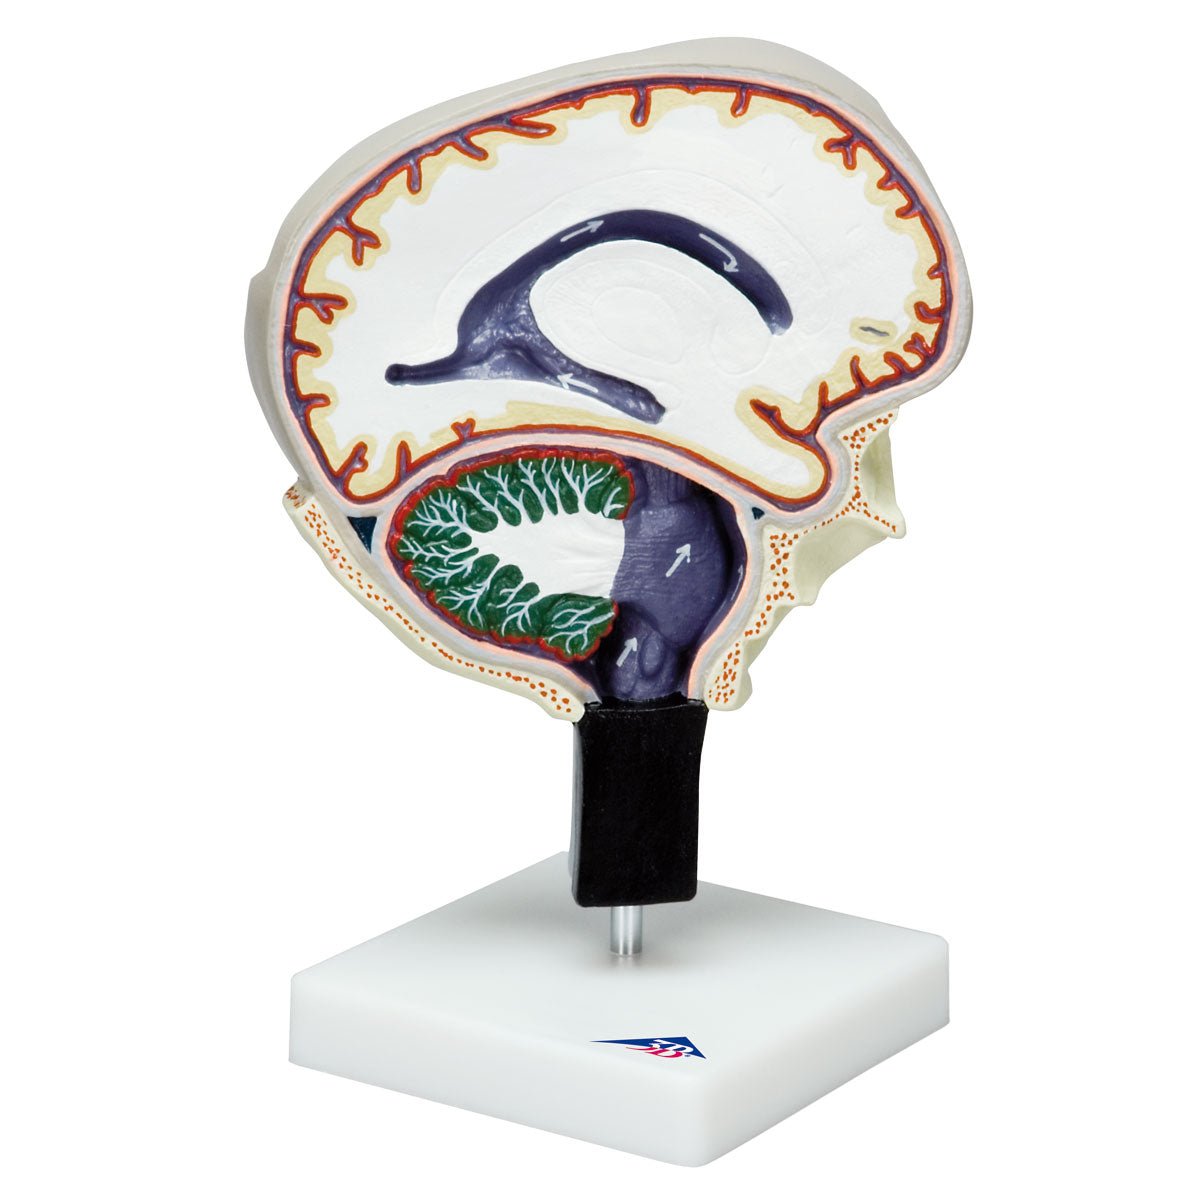 Modell som illustrerar cirkulationen av cerebrospinalvätska